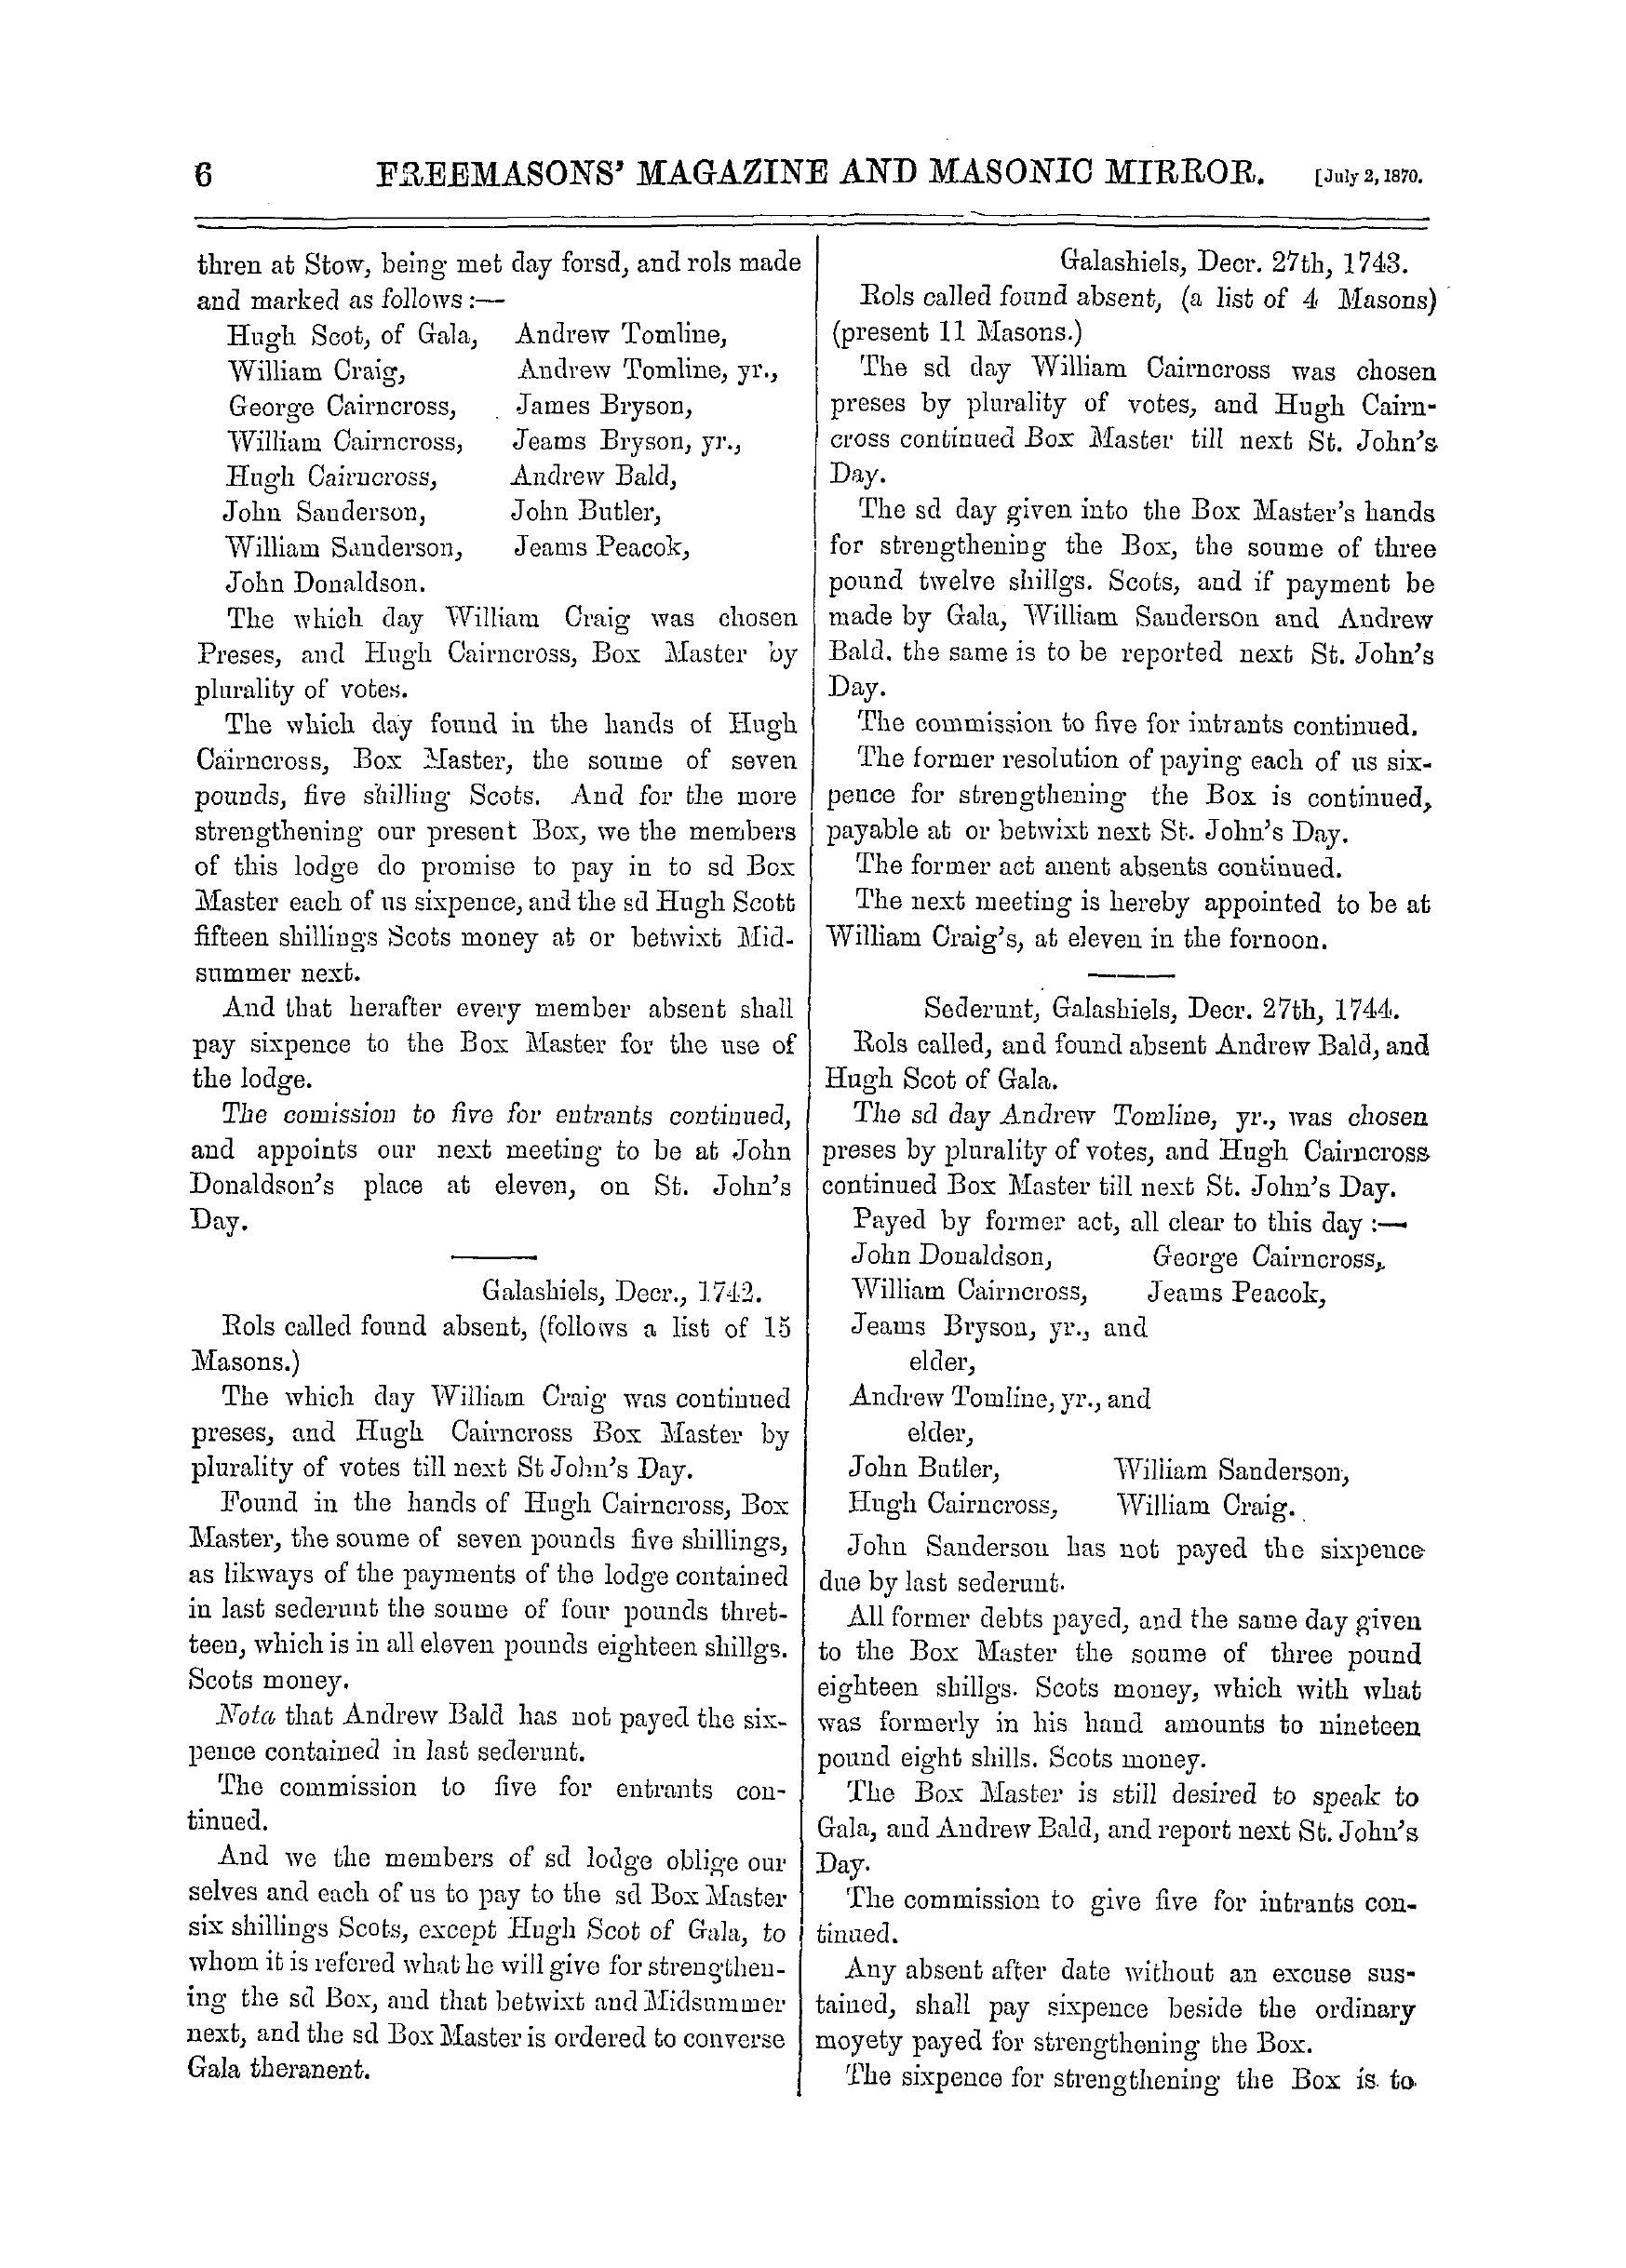 The Freemasons' Monthly Magazine: 1870-07-02: 14